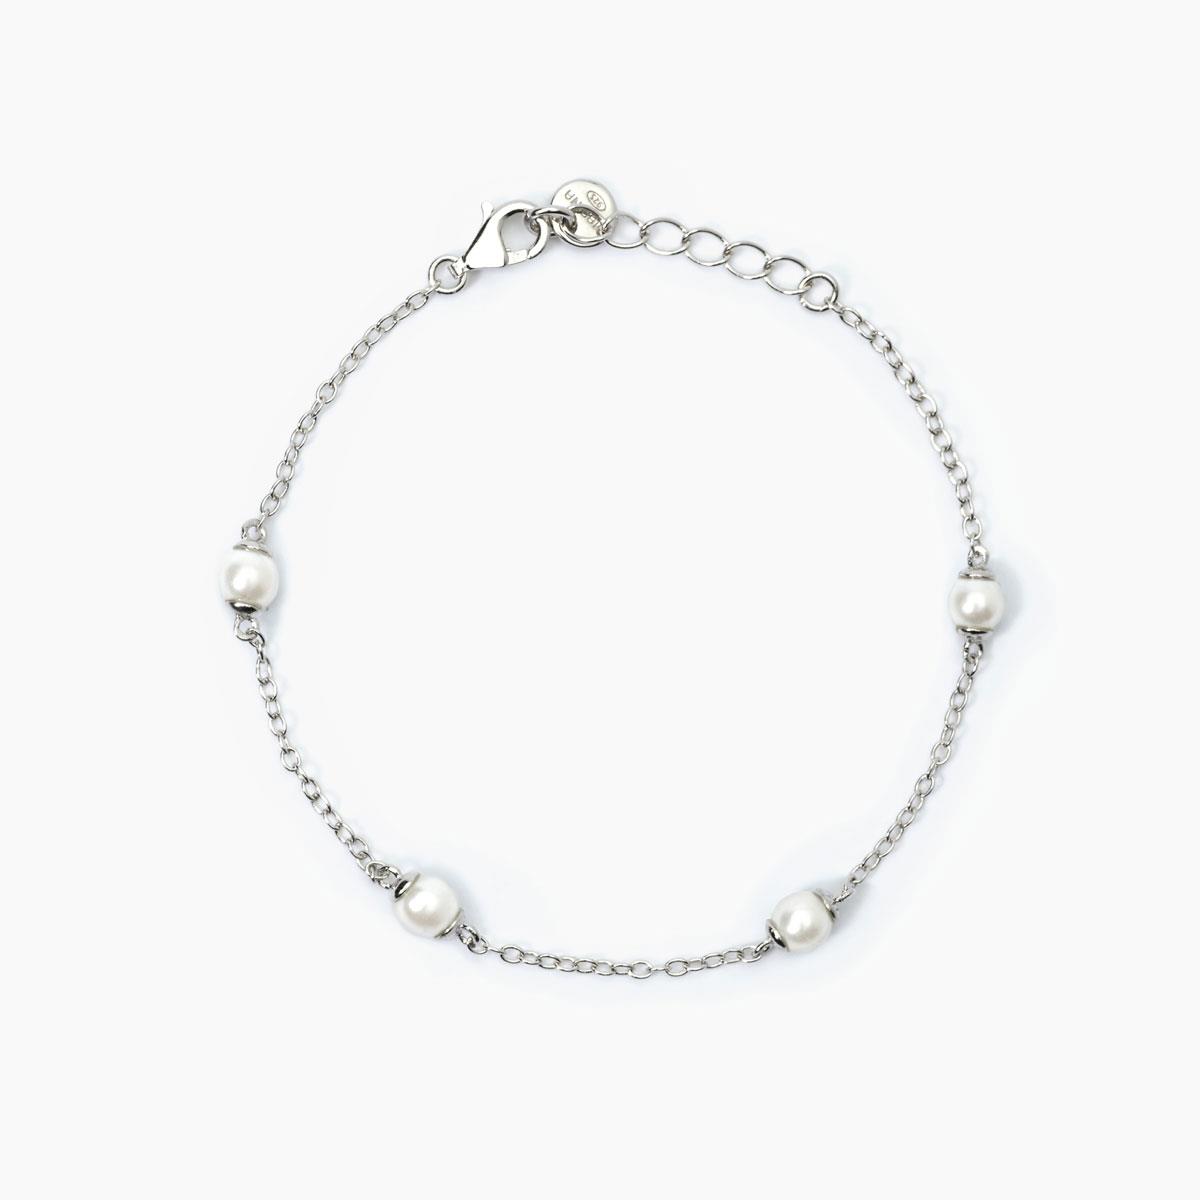 Gioielli linea bambino - Bracciale in argento perle conchiglia Ref. 533773 - MABINA